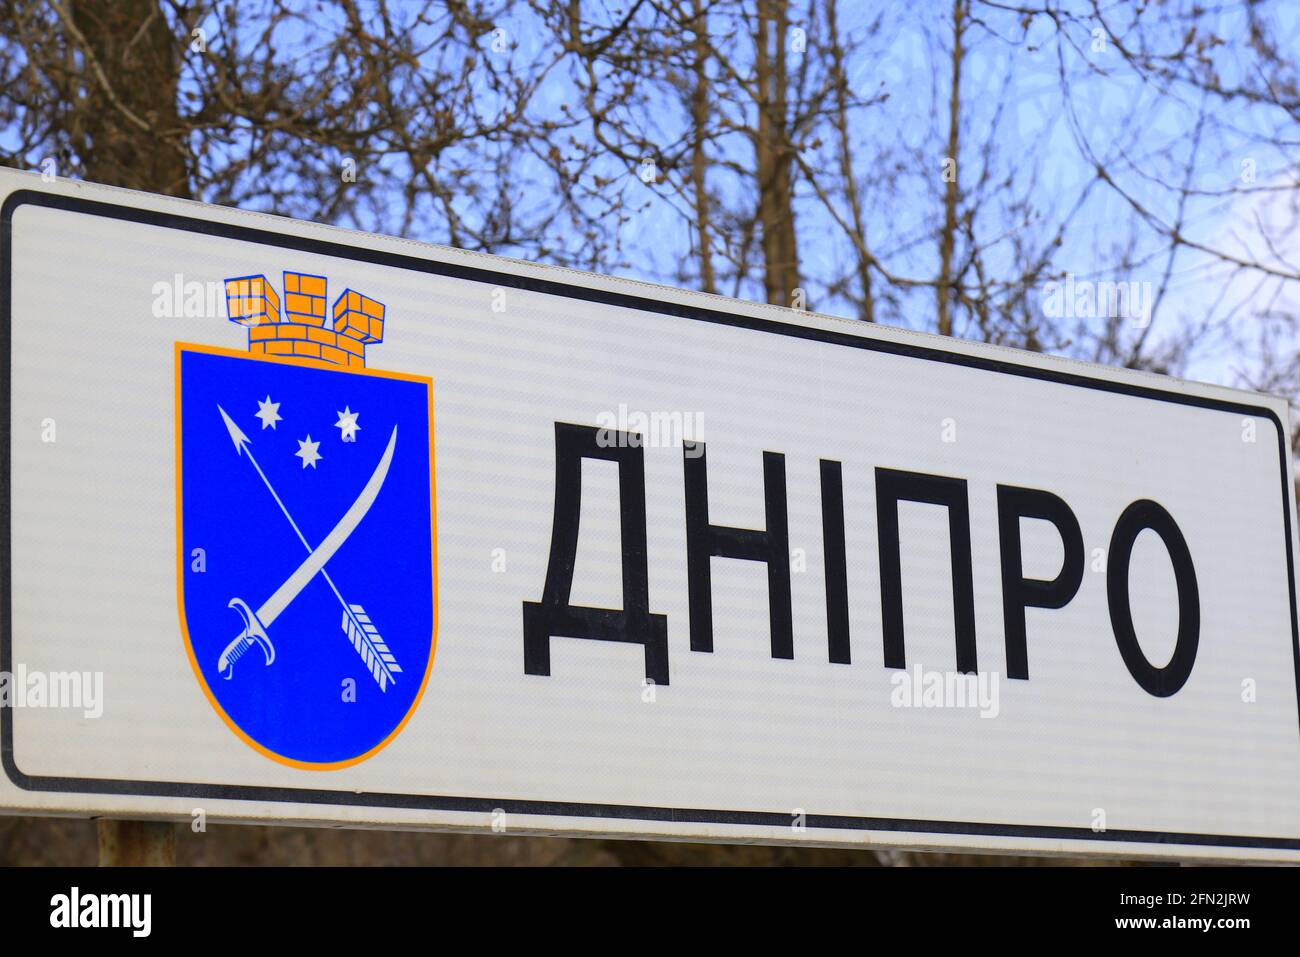 Un panneau routier avec une inscription en ukrainien Dnipro, avec les armoiries de la ville ukrainienne Dnepr. Plaque signalétique à l'entrée. Banque D'Images